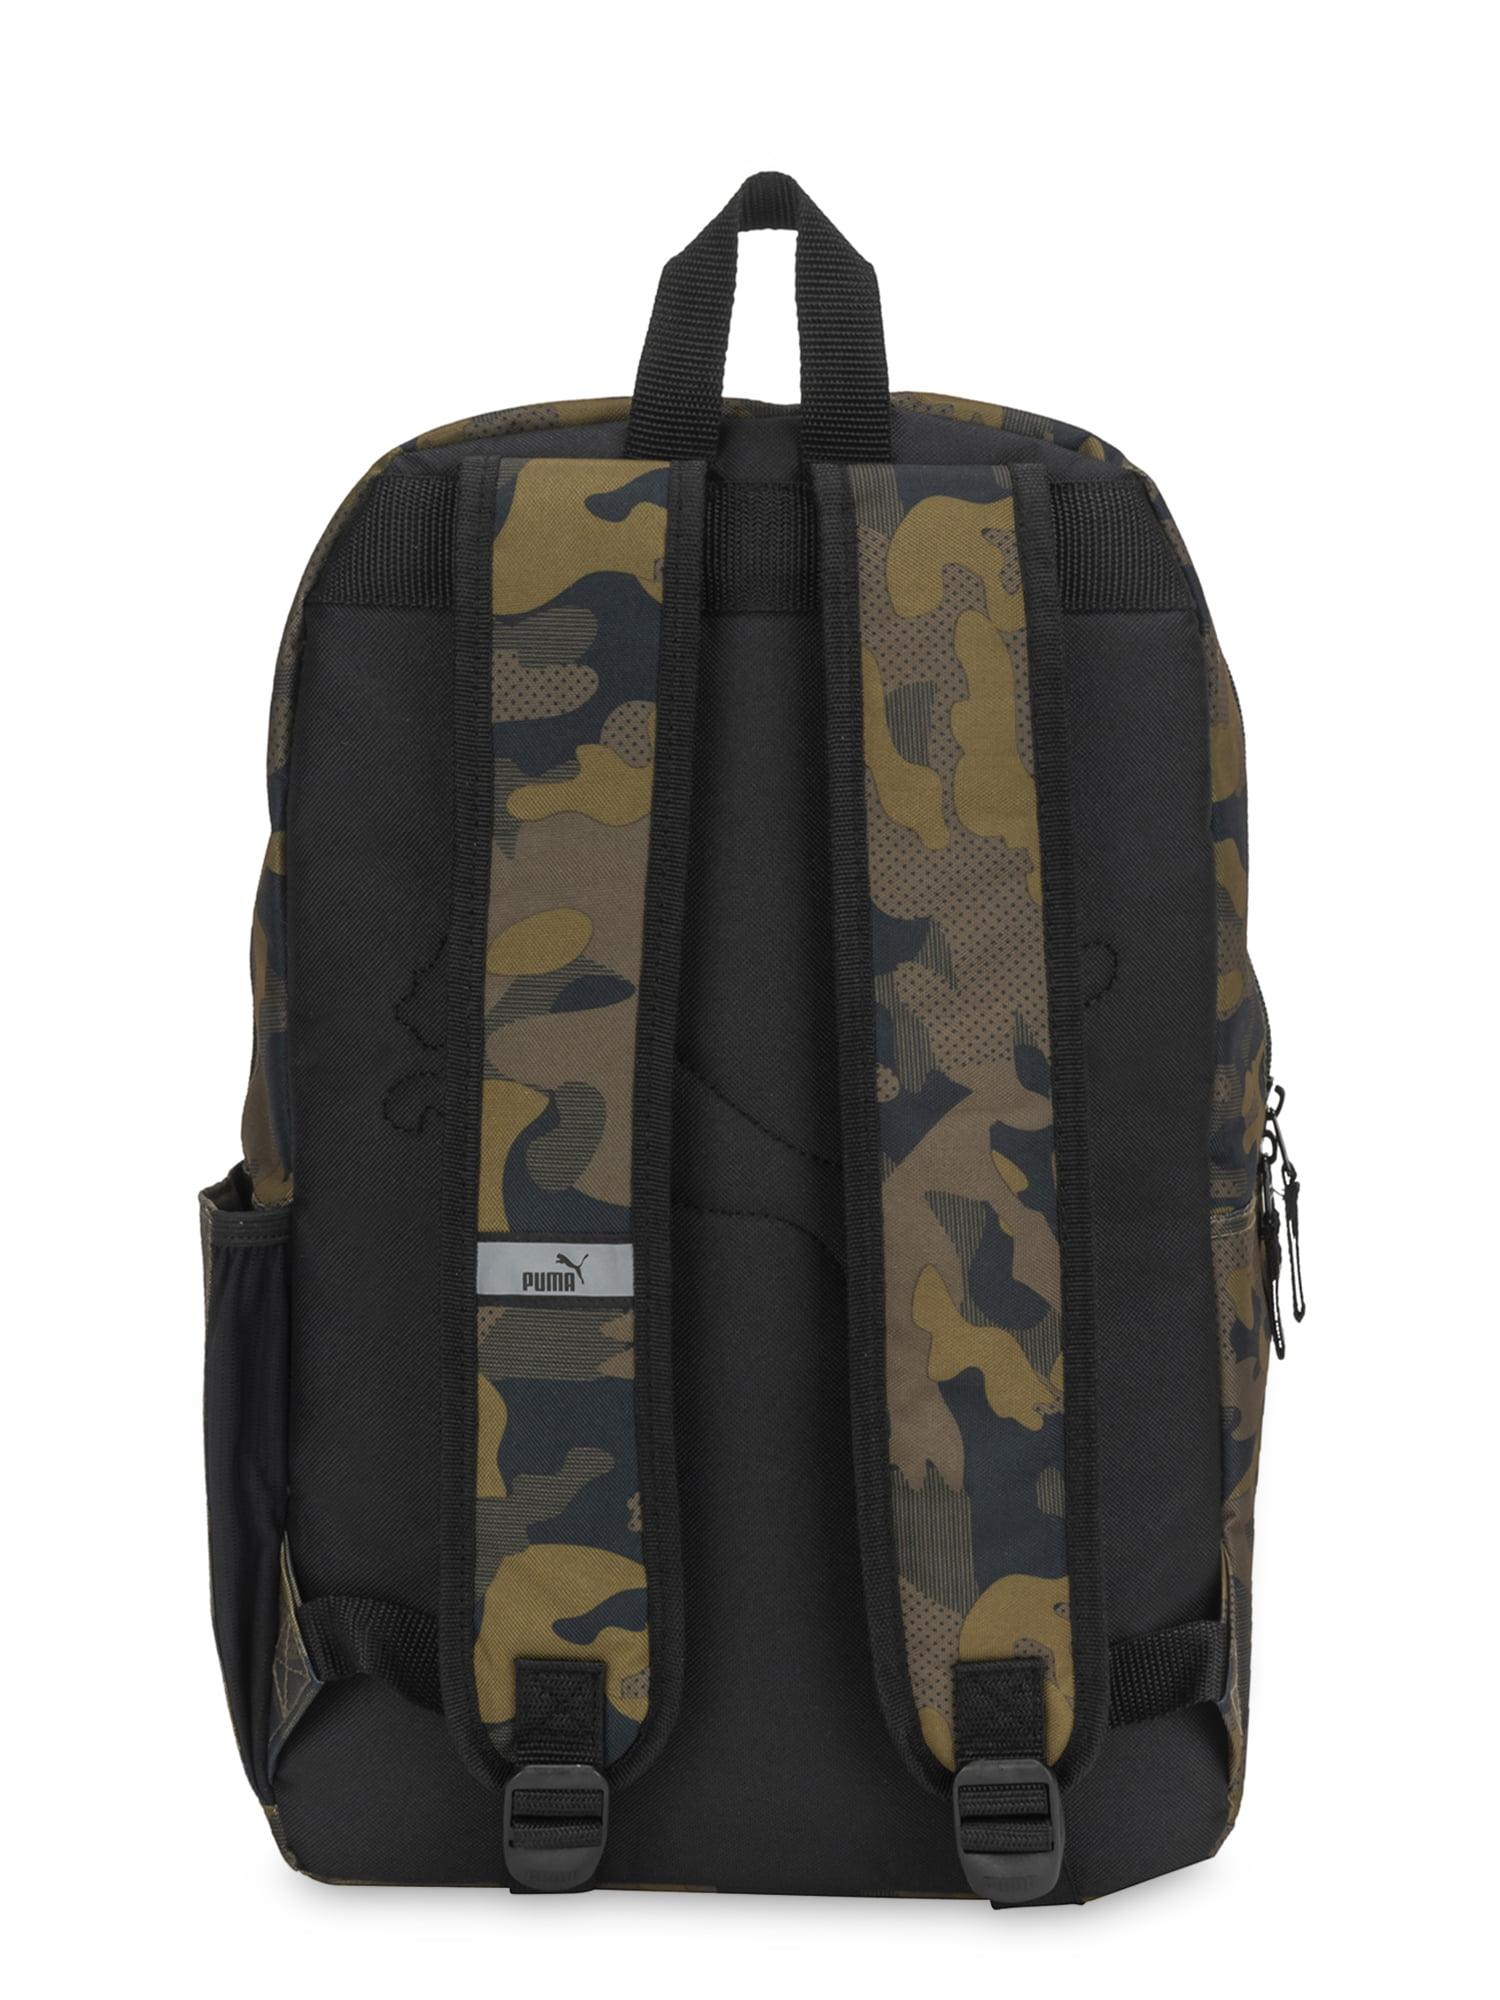 puma evercat backpack